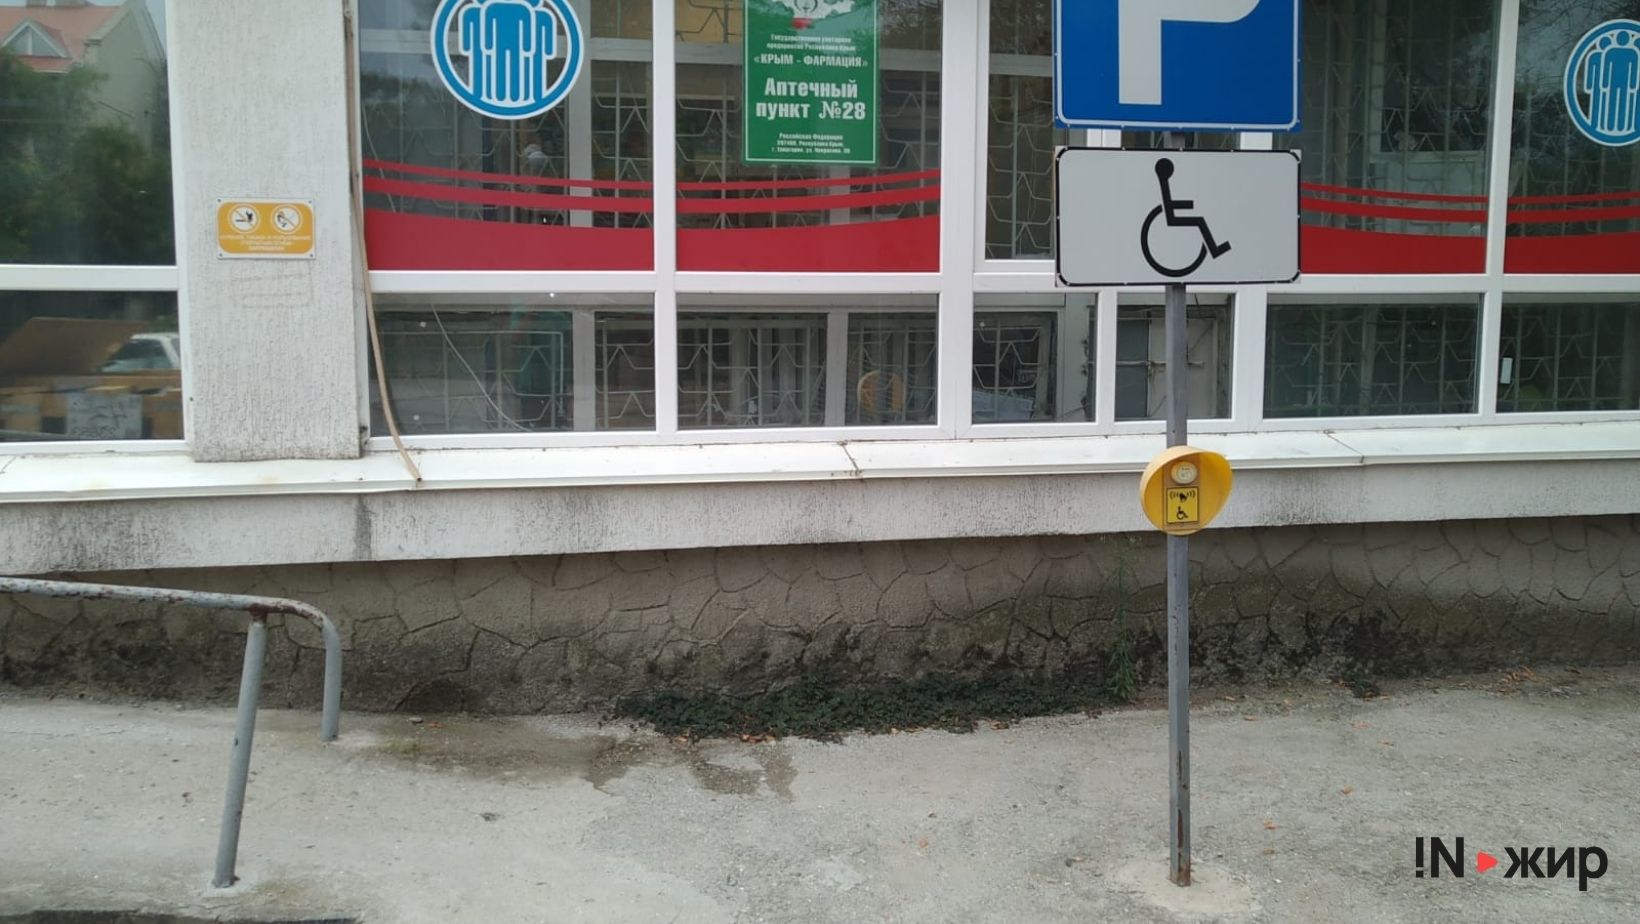 Кнопка вызова сотрудников, около&nbsp;евпаторийской городской поликлиники. Фото: INжир Media